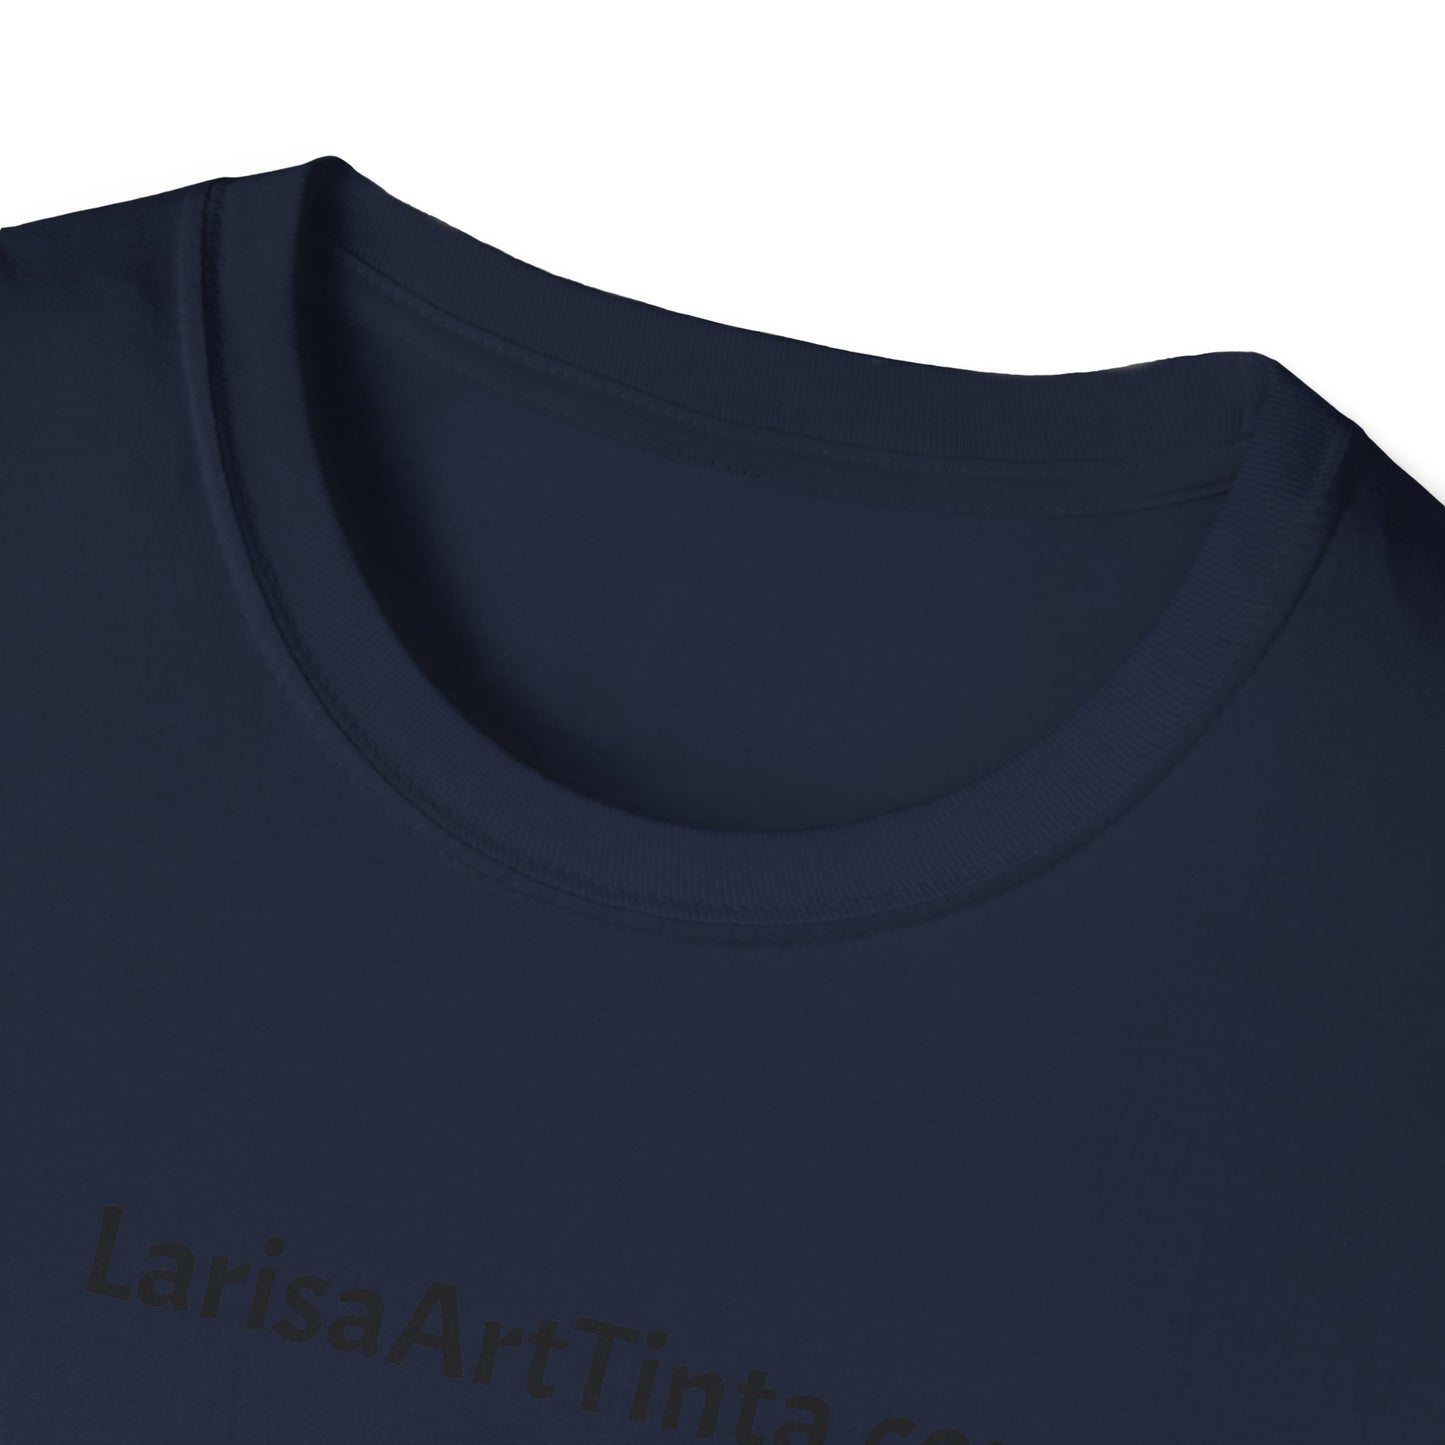 Unisex-T-Shirt mit 2 Logos 